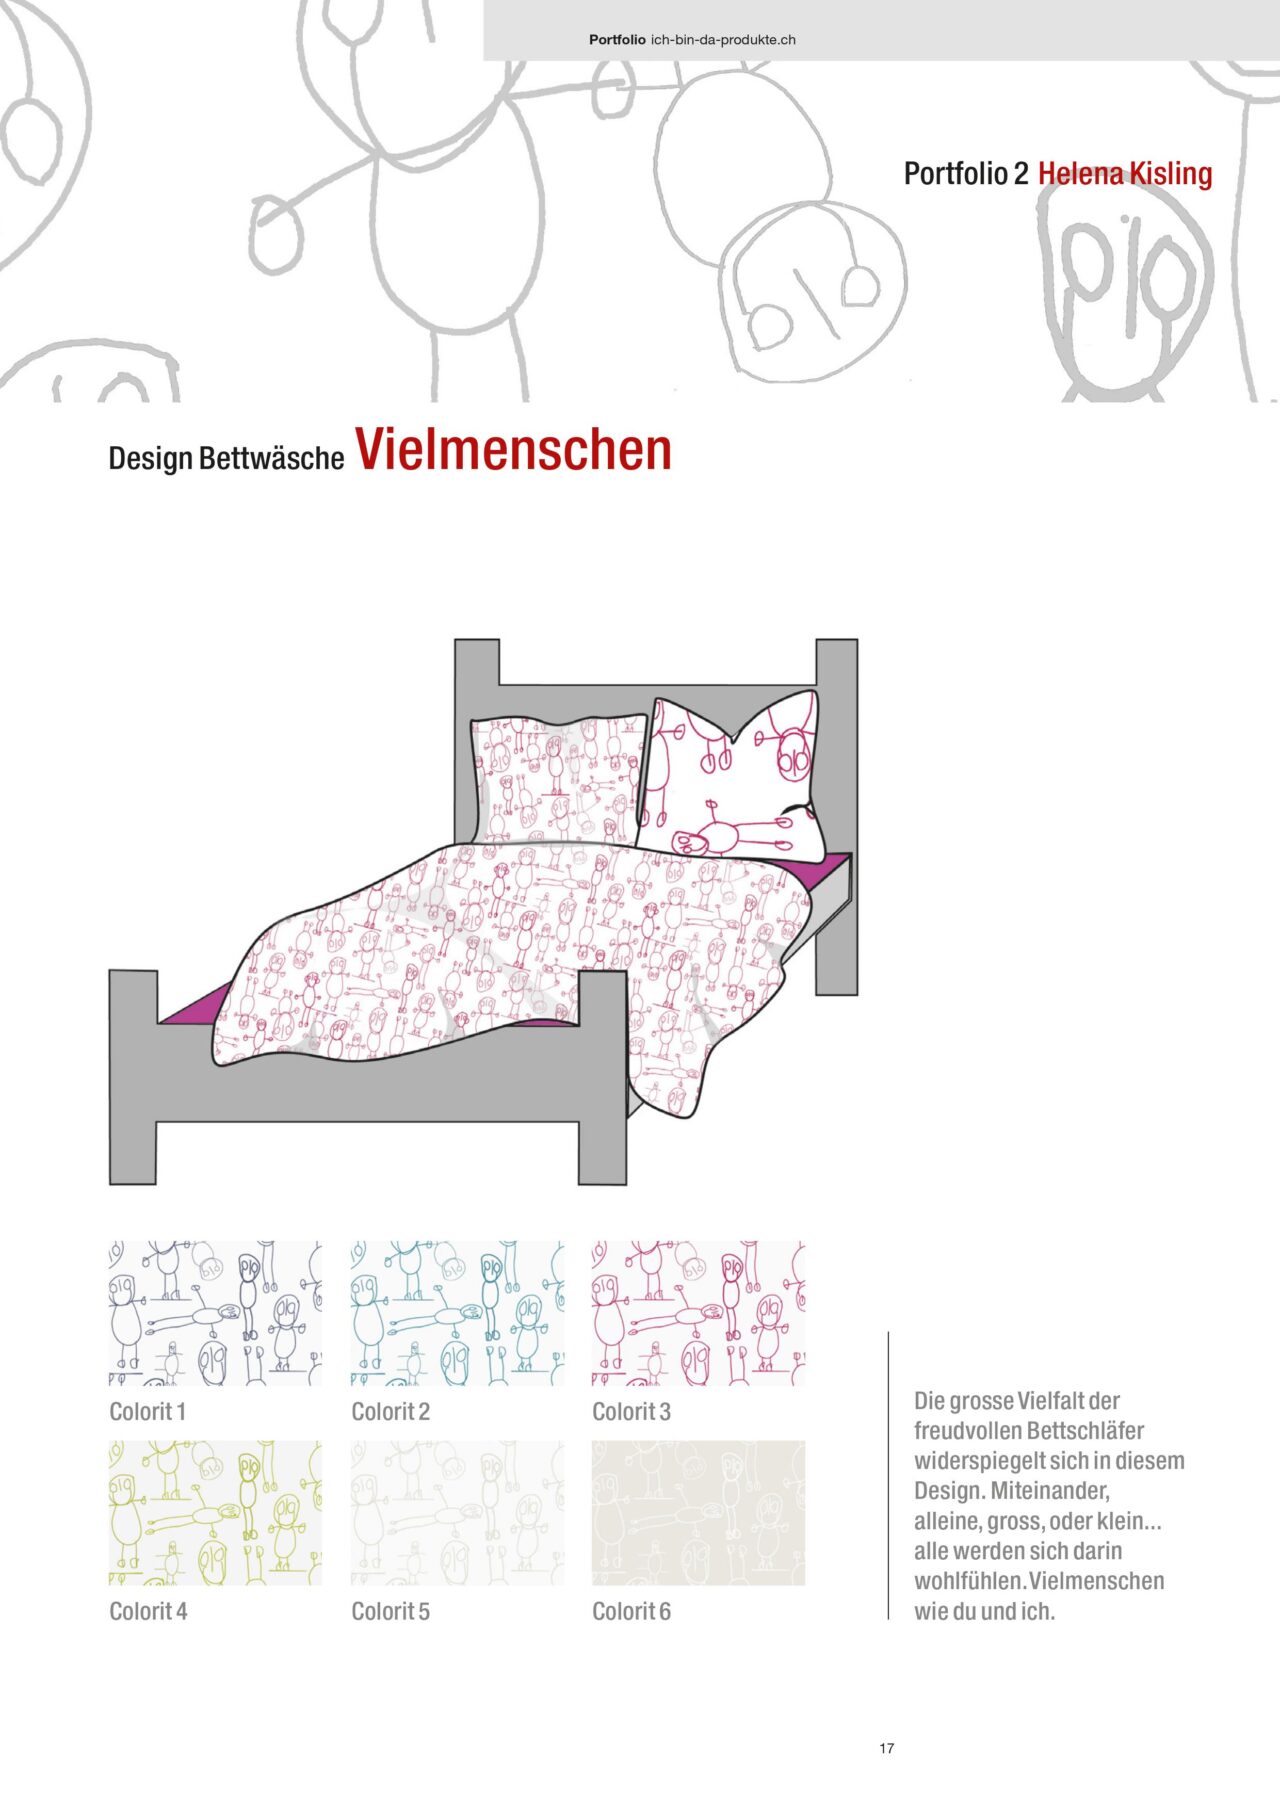 helena-kisling-textildesign-menschen-mit-behinderungen-kunst-art-brut-basel-schweiz